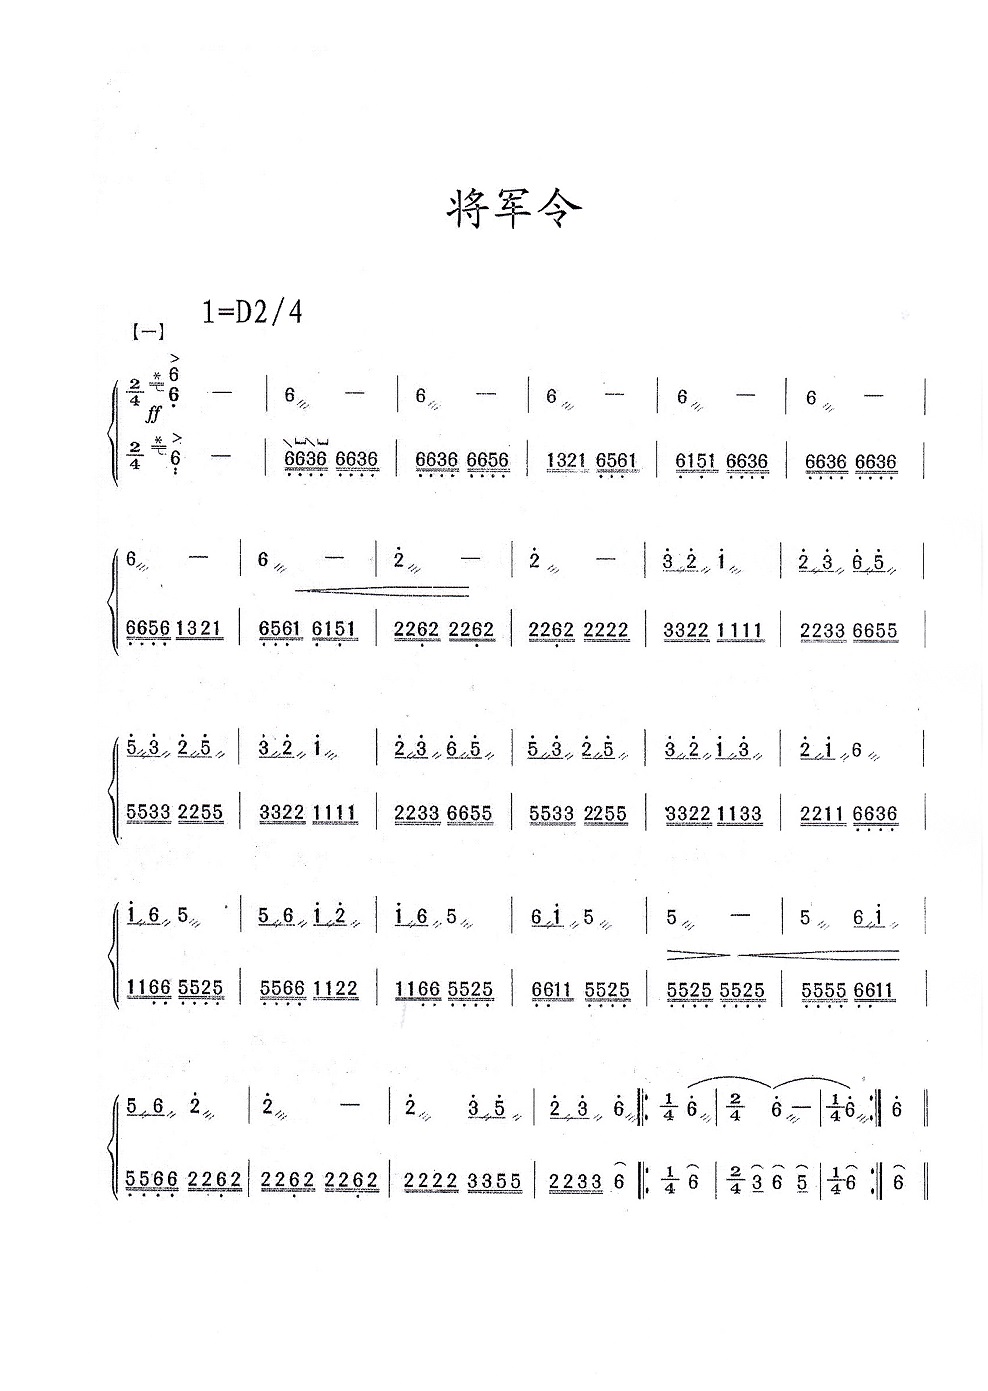 古筝曲《将军令》演奏简谱及伴奏mp3音乐下载